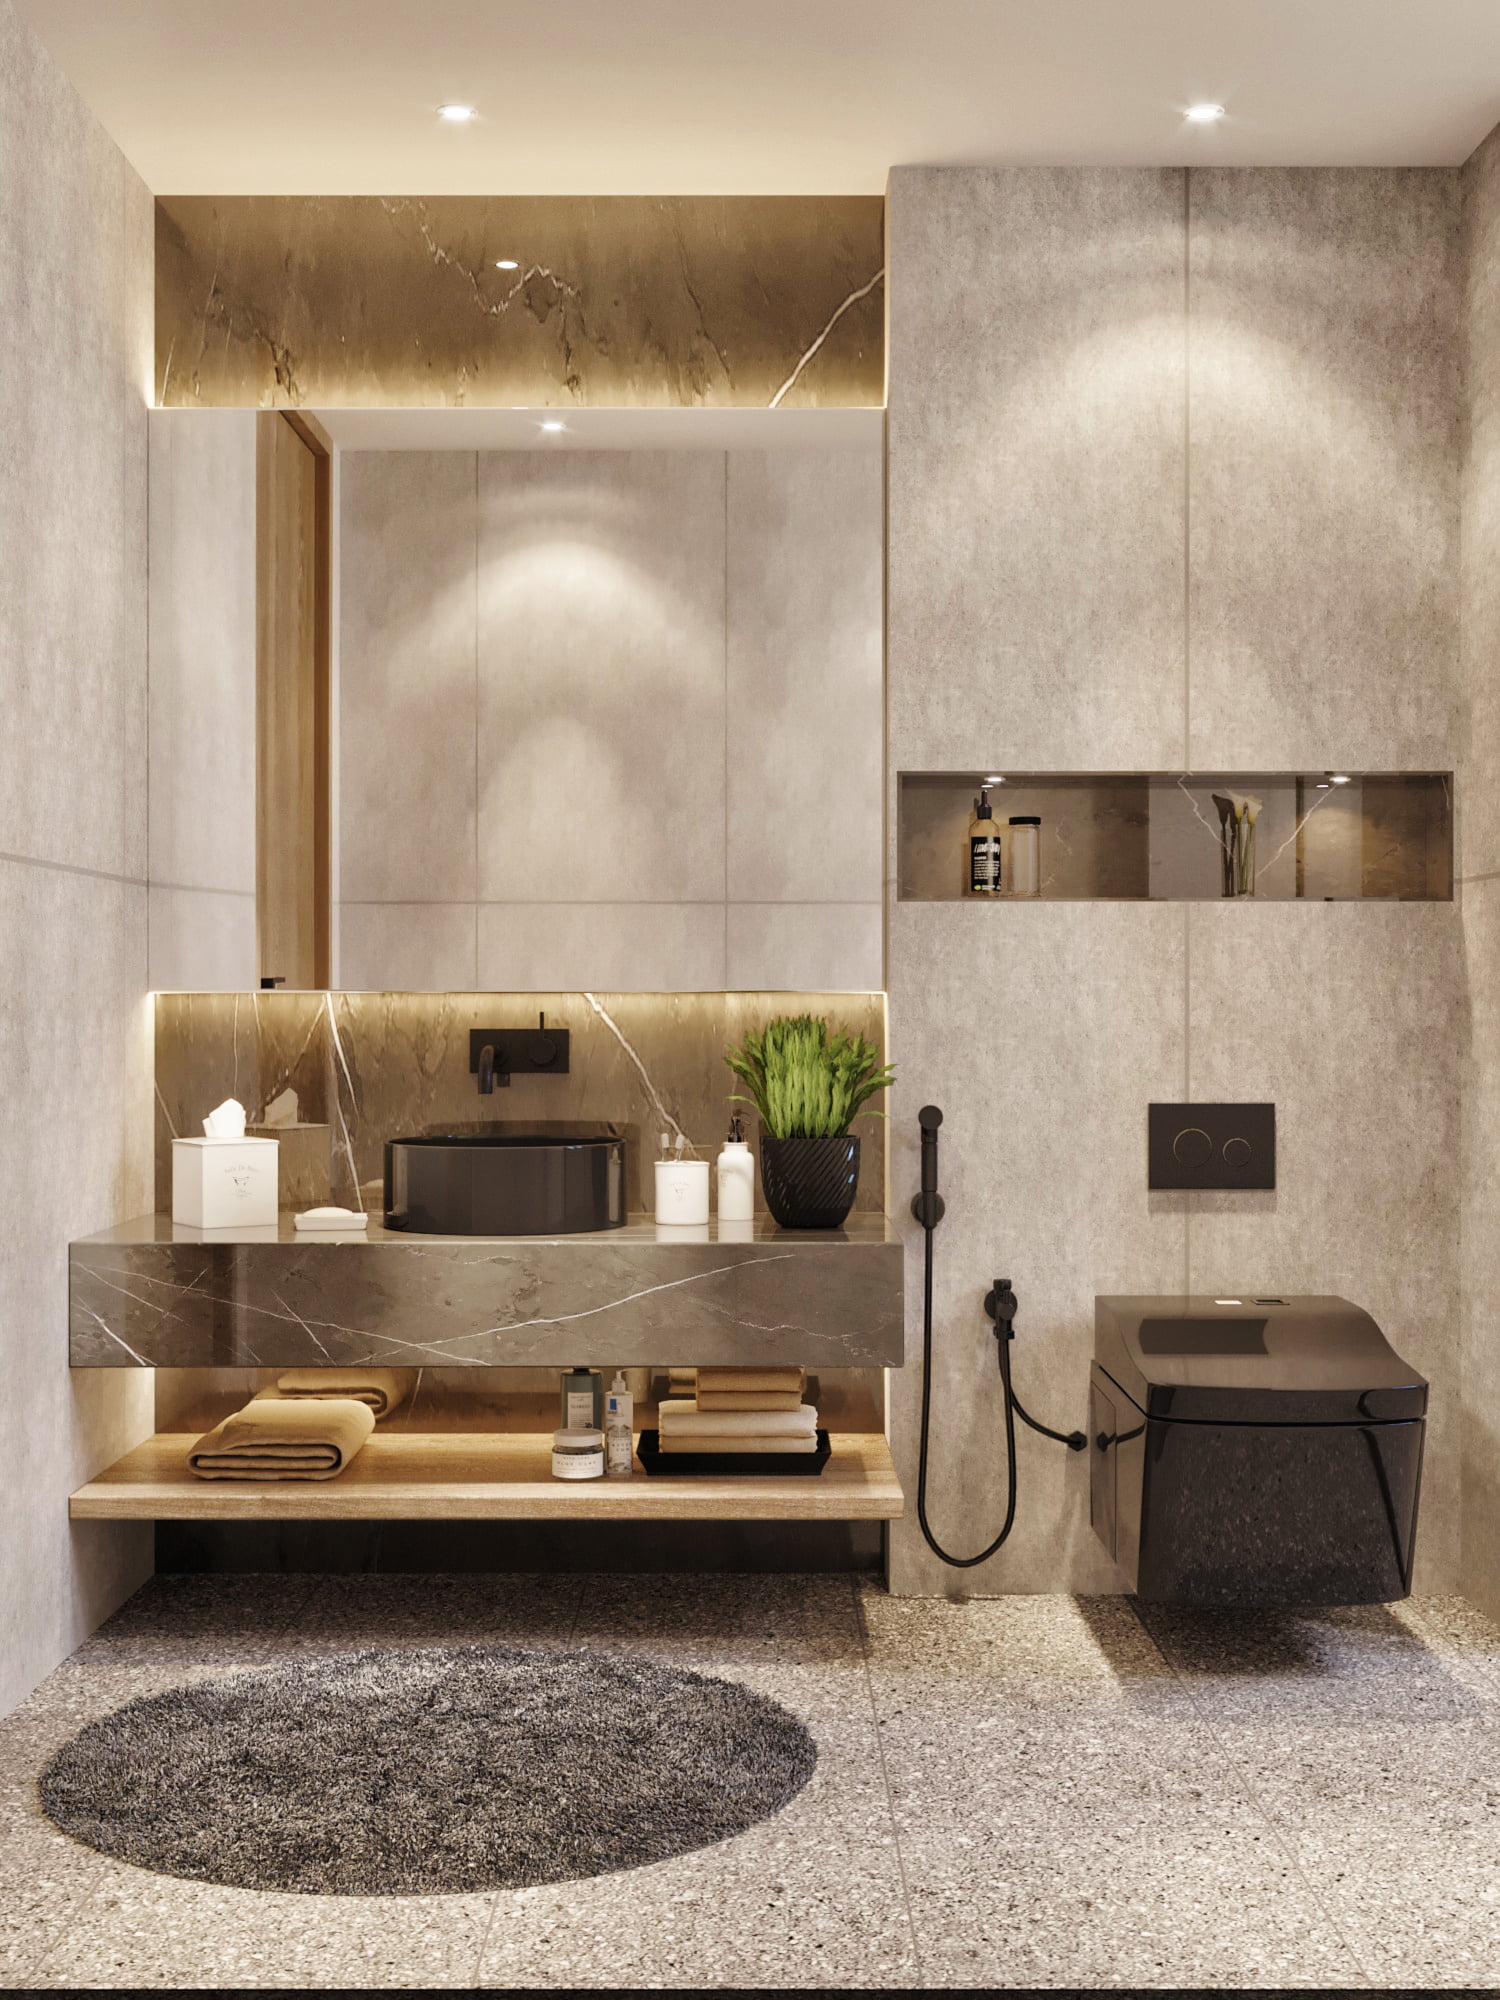 Gizli Bathroom Renovation Dubai